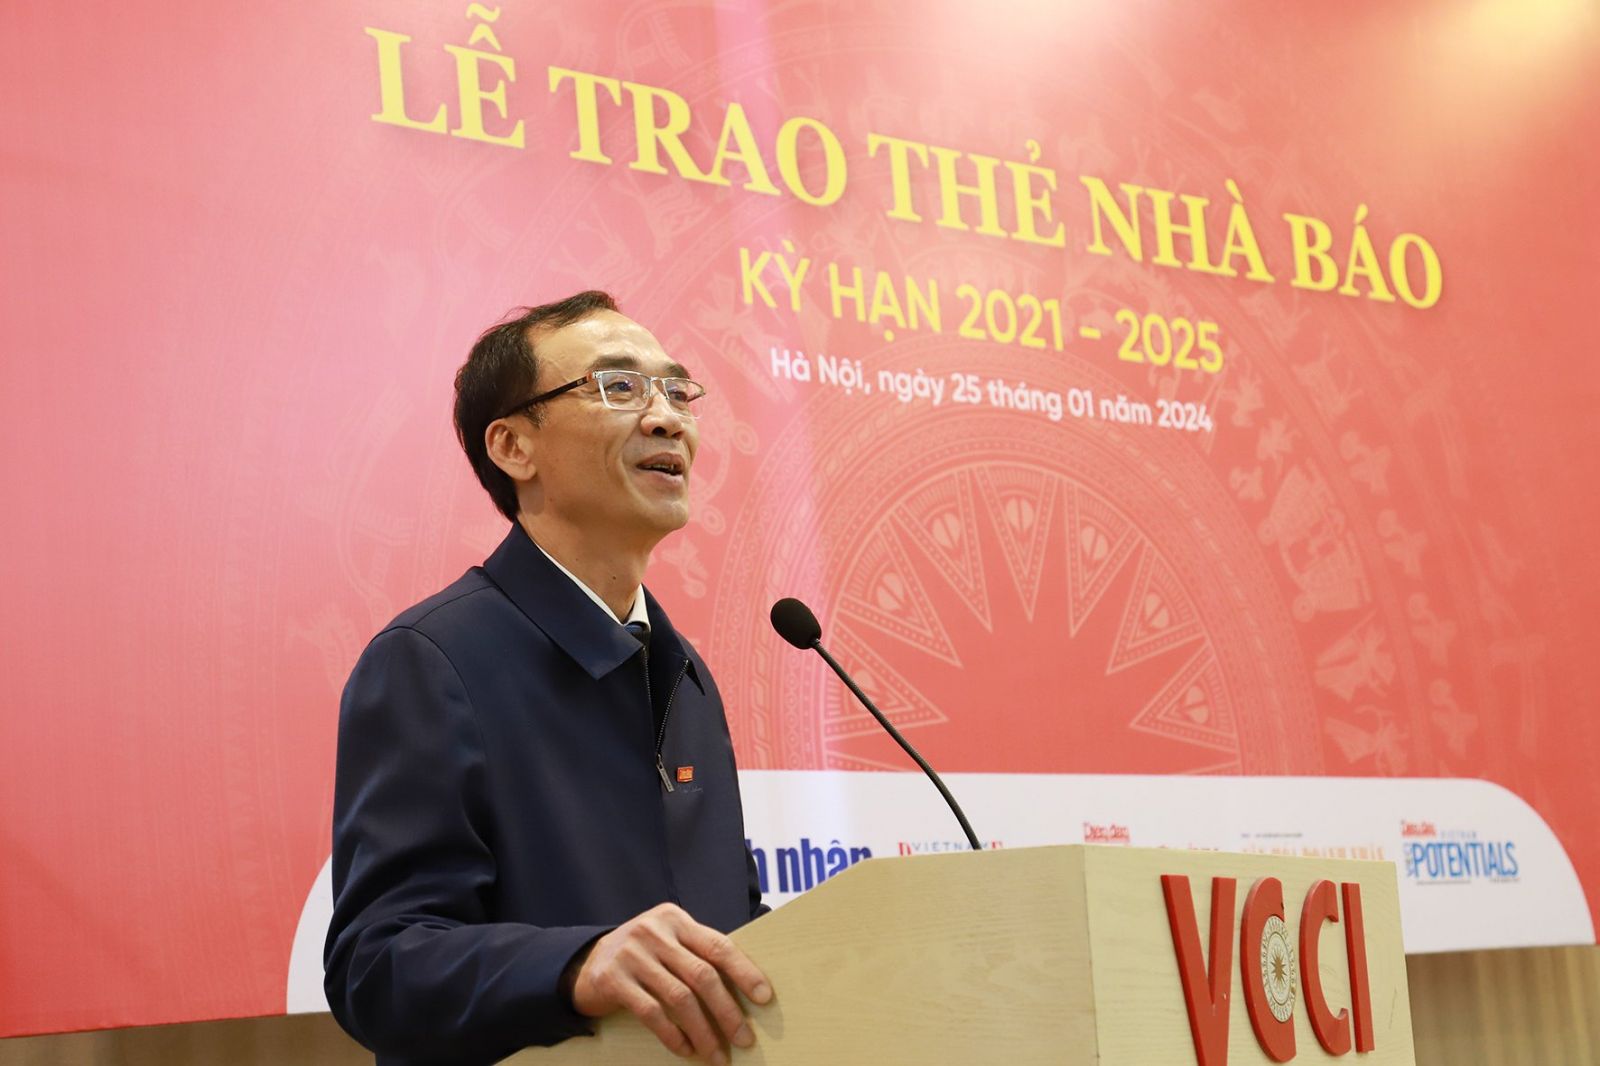 Phó Tổng biên tập phụ trách Nguyễn Linh Anh khẳng định đội ngũ nhà báo sẽ đóng vai trò quan trọng trong quá trình xây dựng văn hóa doanh nhân, doanh nghiệp